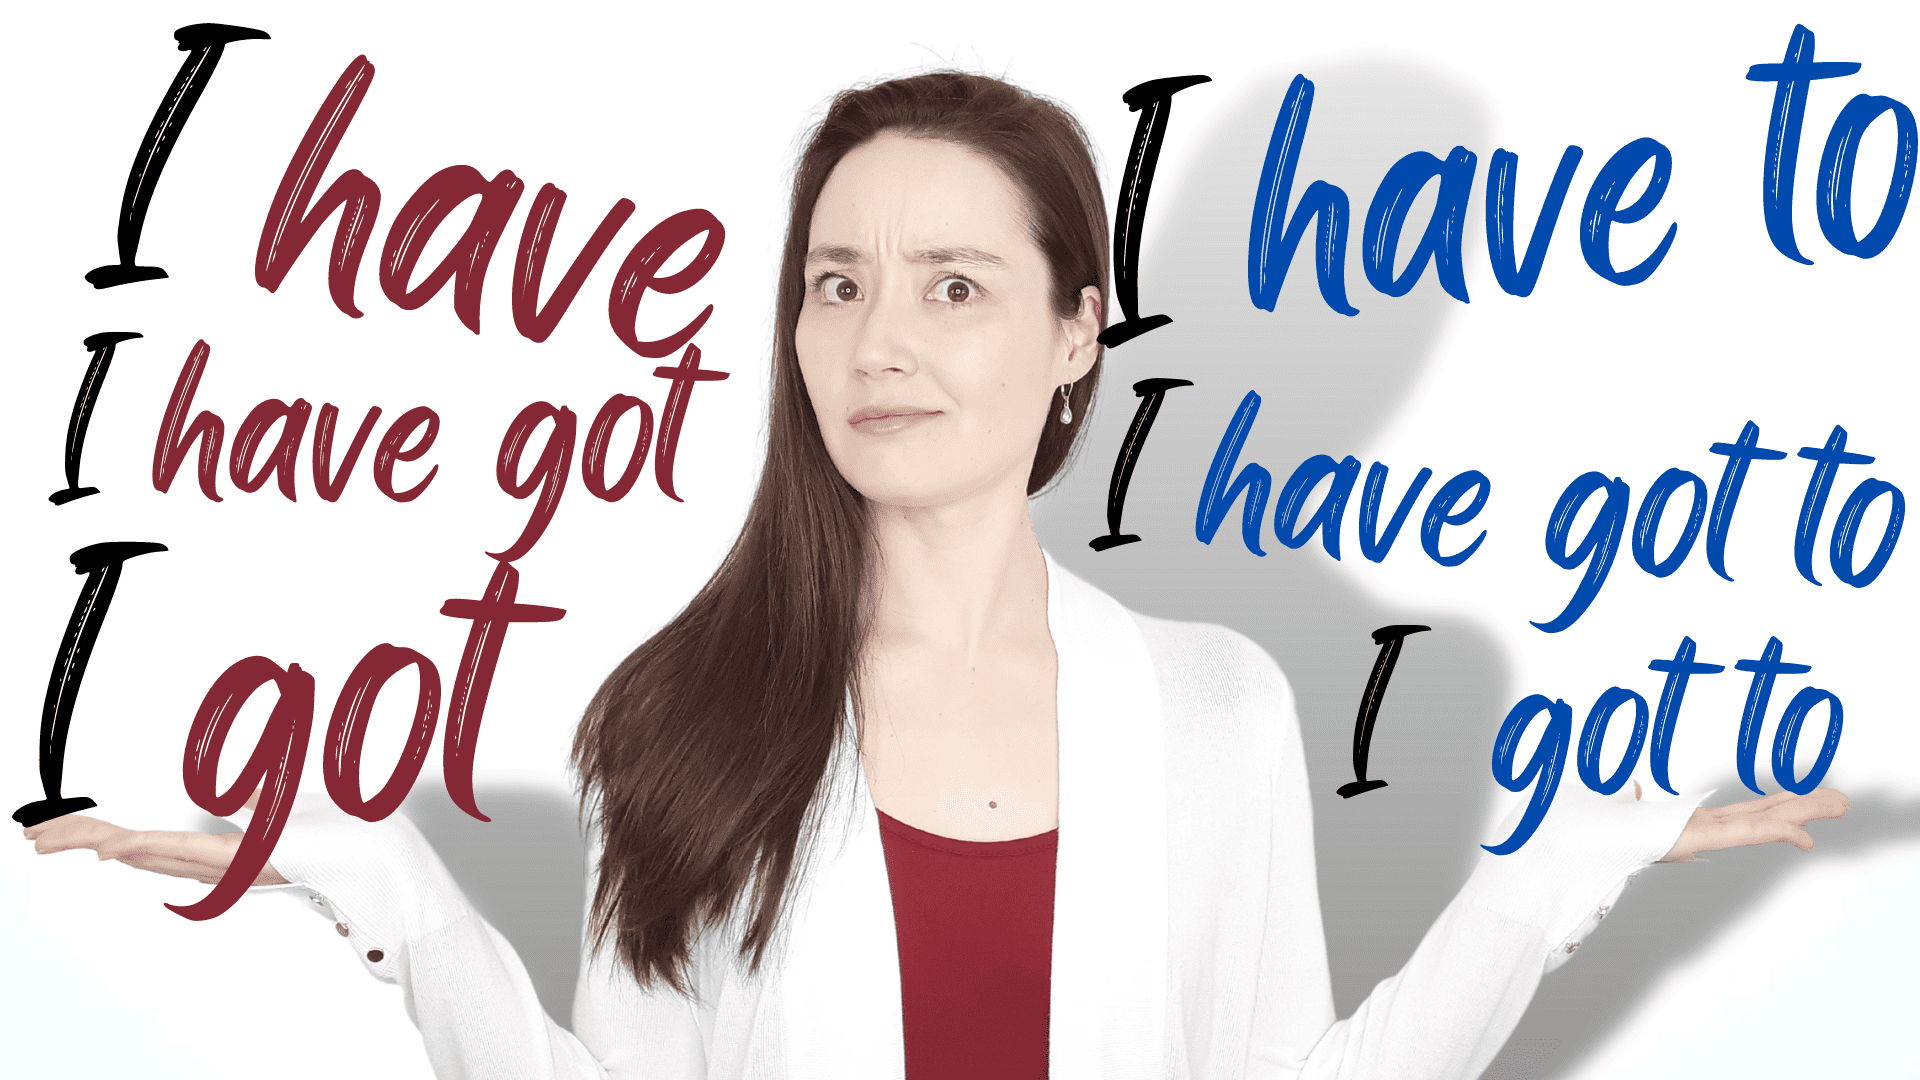 I have vs. I have got vs. I got vs. I gotta | English grammar lesson – with VIDEO!